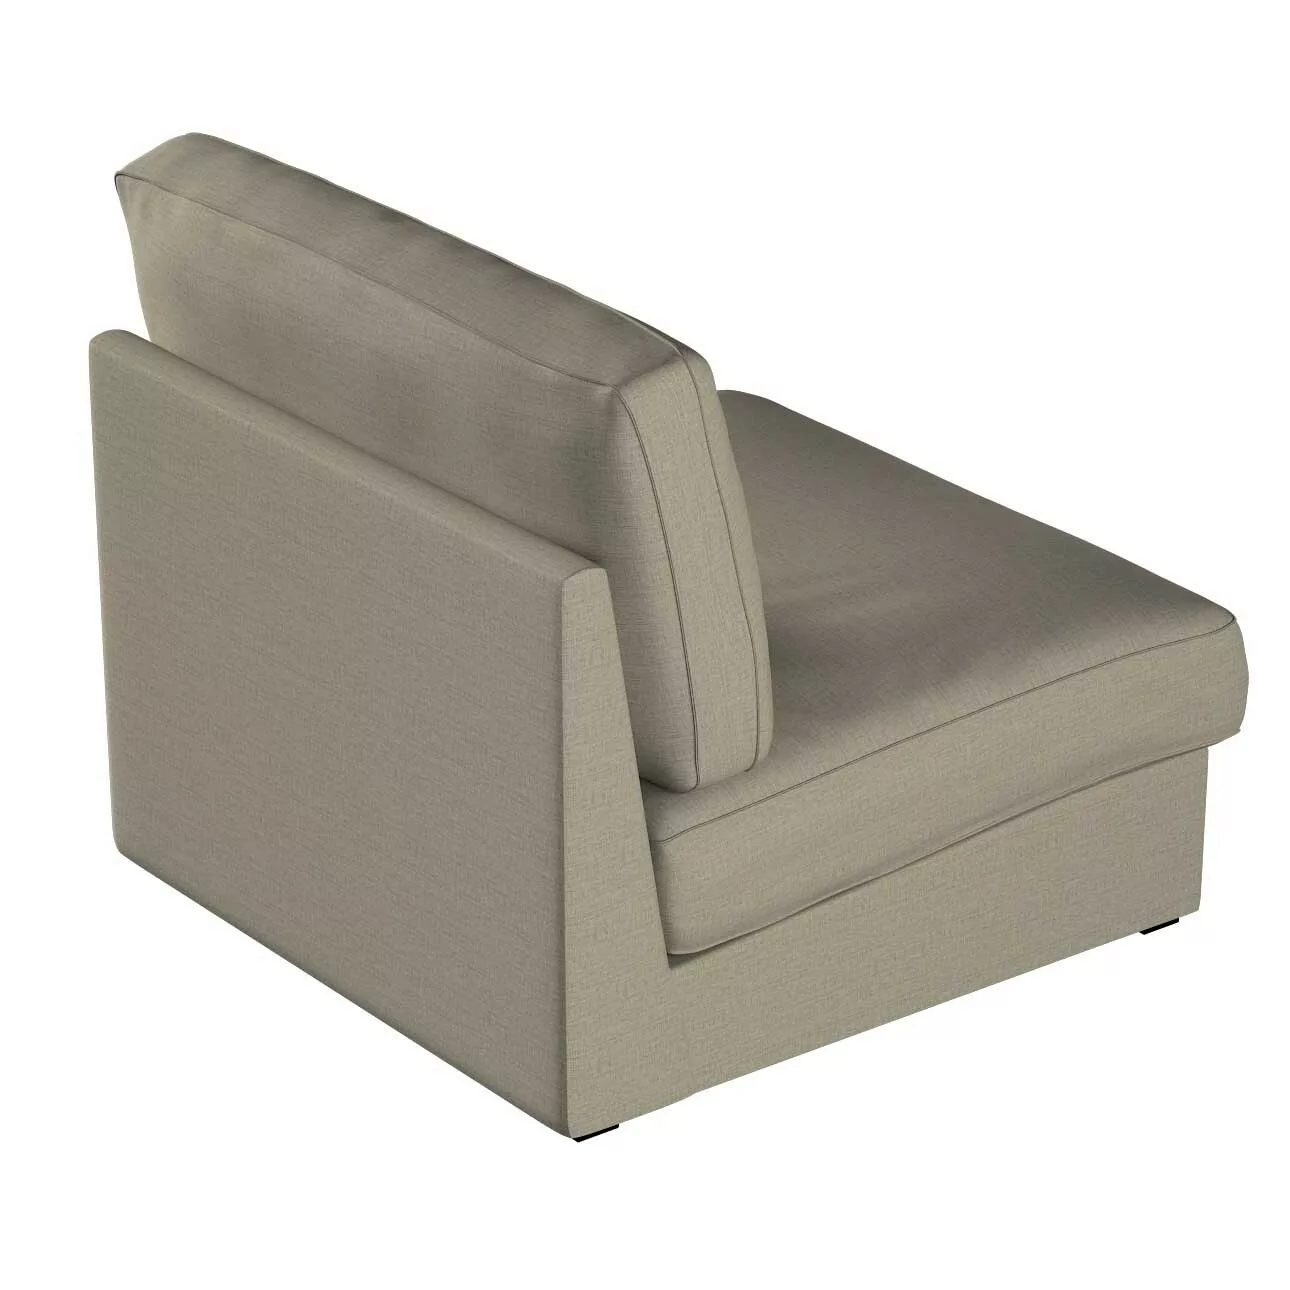 Bezug für Kivik Sessel nicht ausklappbar, grau-braun, Bezug für Sessel Kivi günstig online kaufen